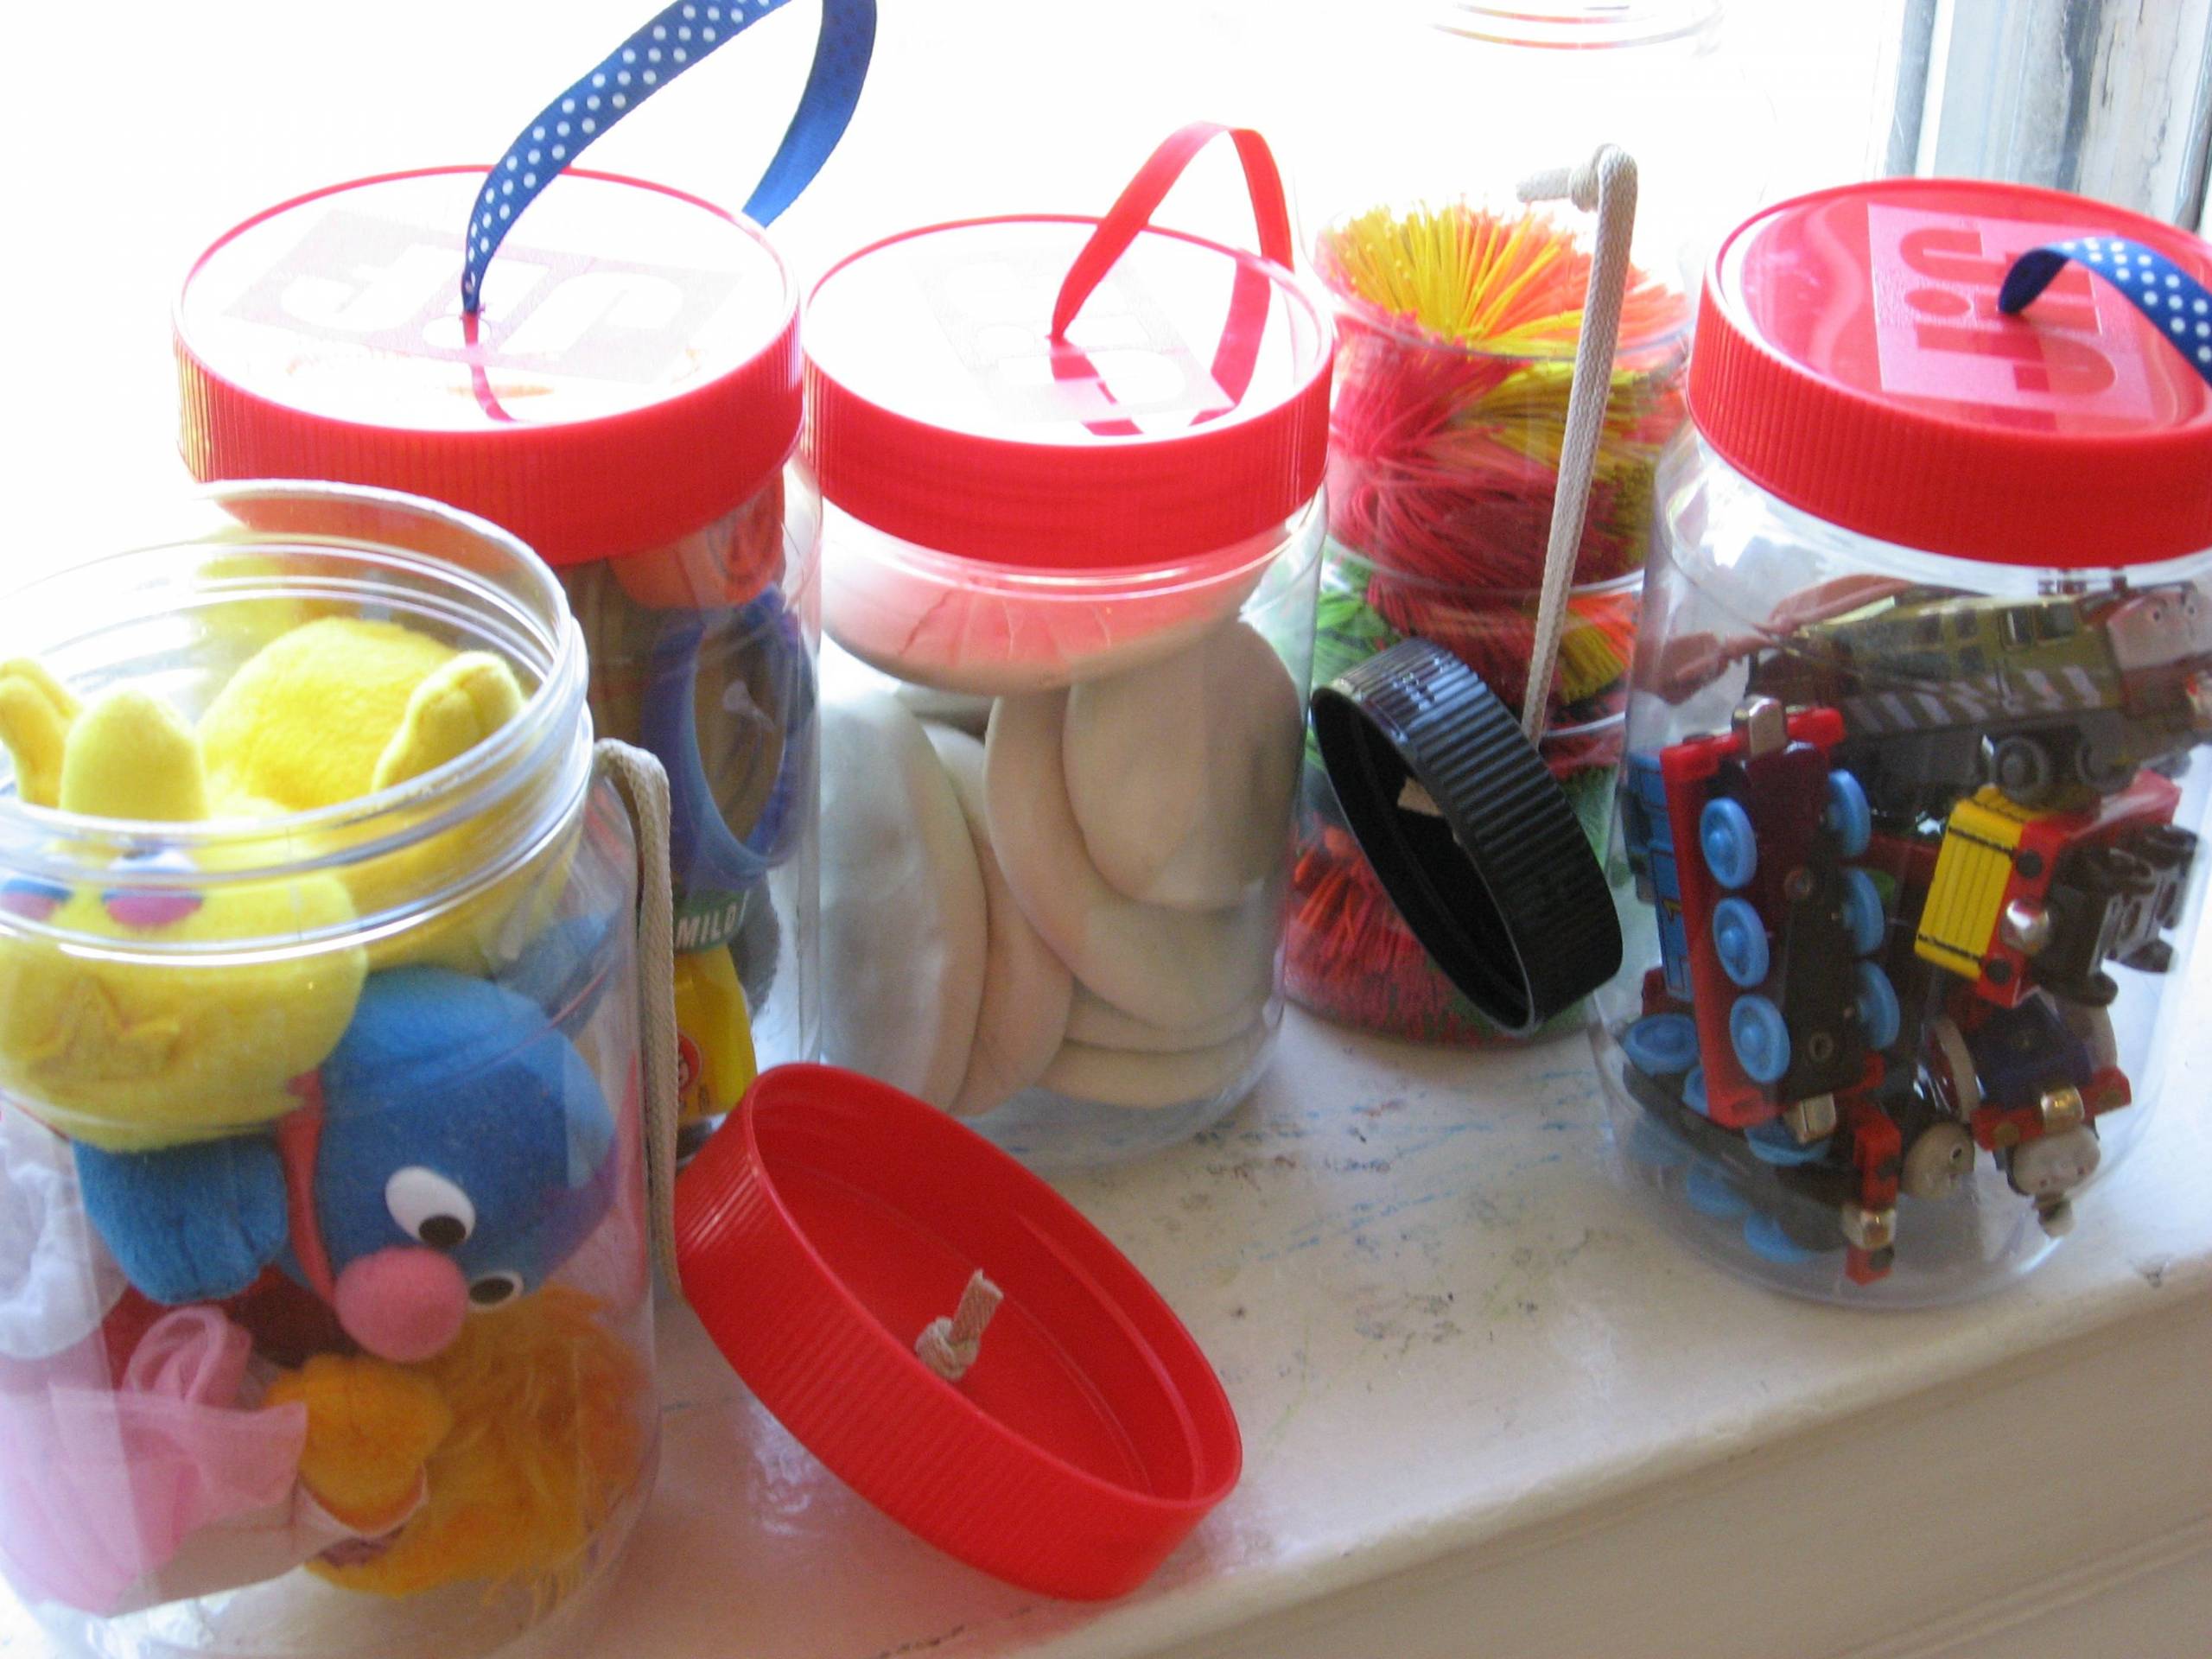 Хранение игрушек в детской комнате: советы и идеи